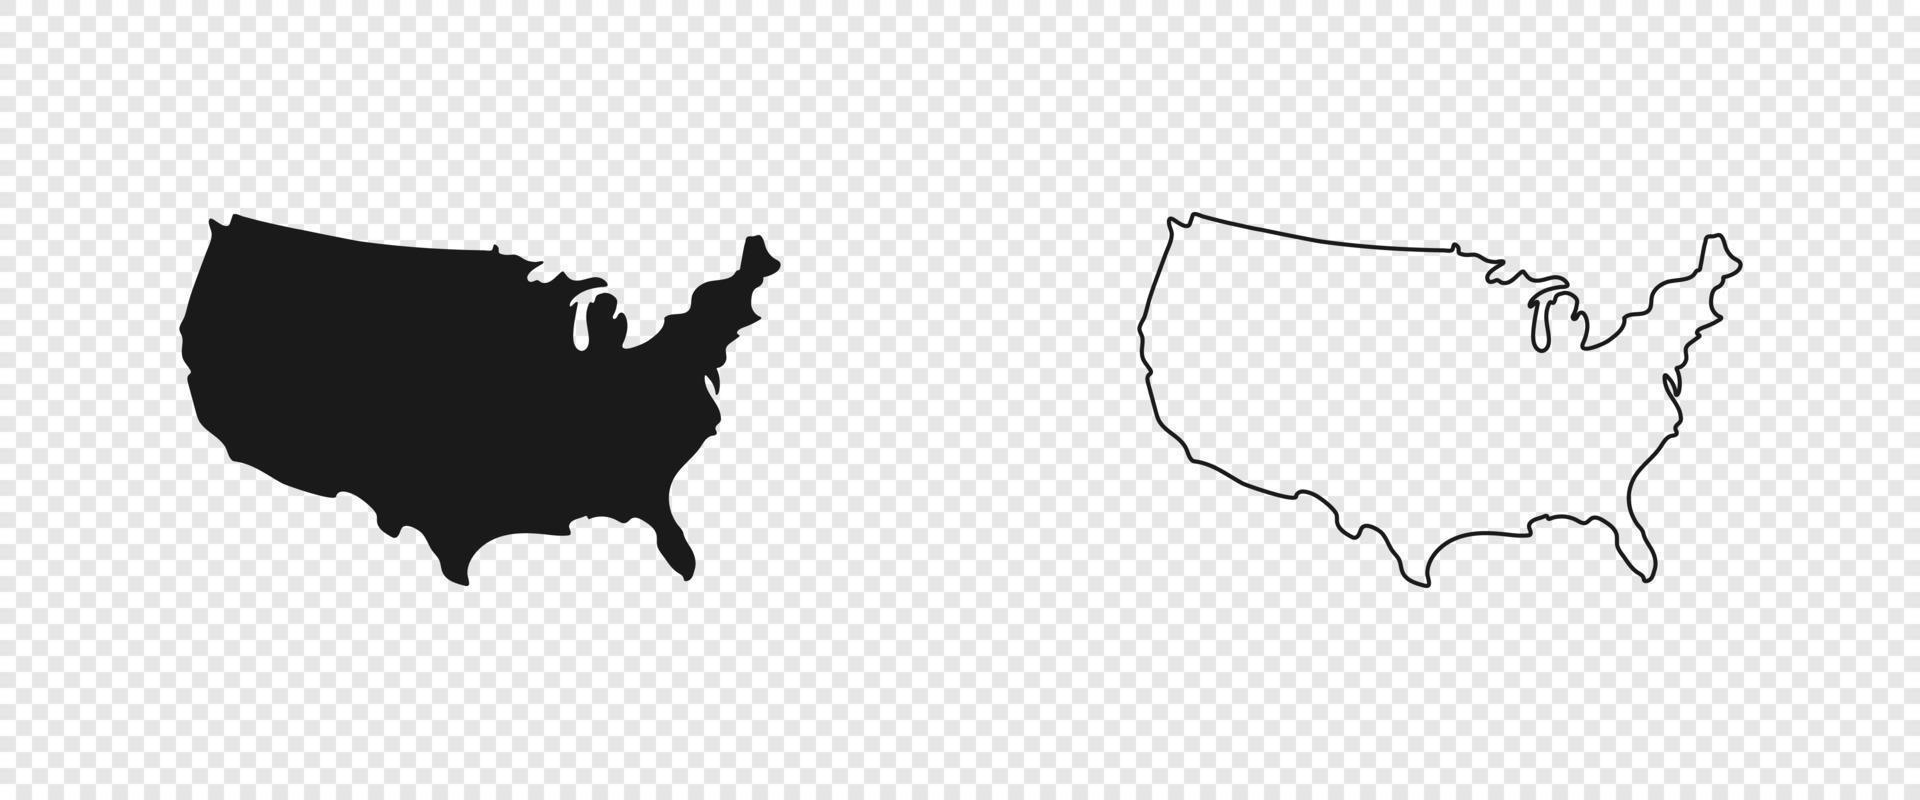 Verenigde Staten van Amerika kaart. Amerikaans kaart. Verenigde staten van Amerika kaart in vlak en lijnen ontwerp. eps10 vector